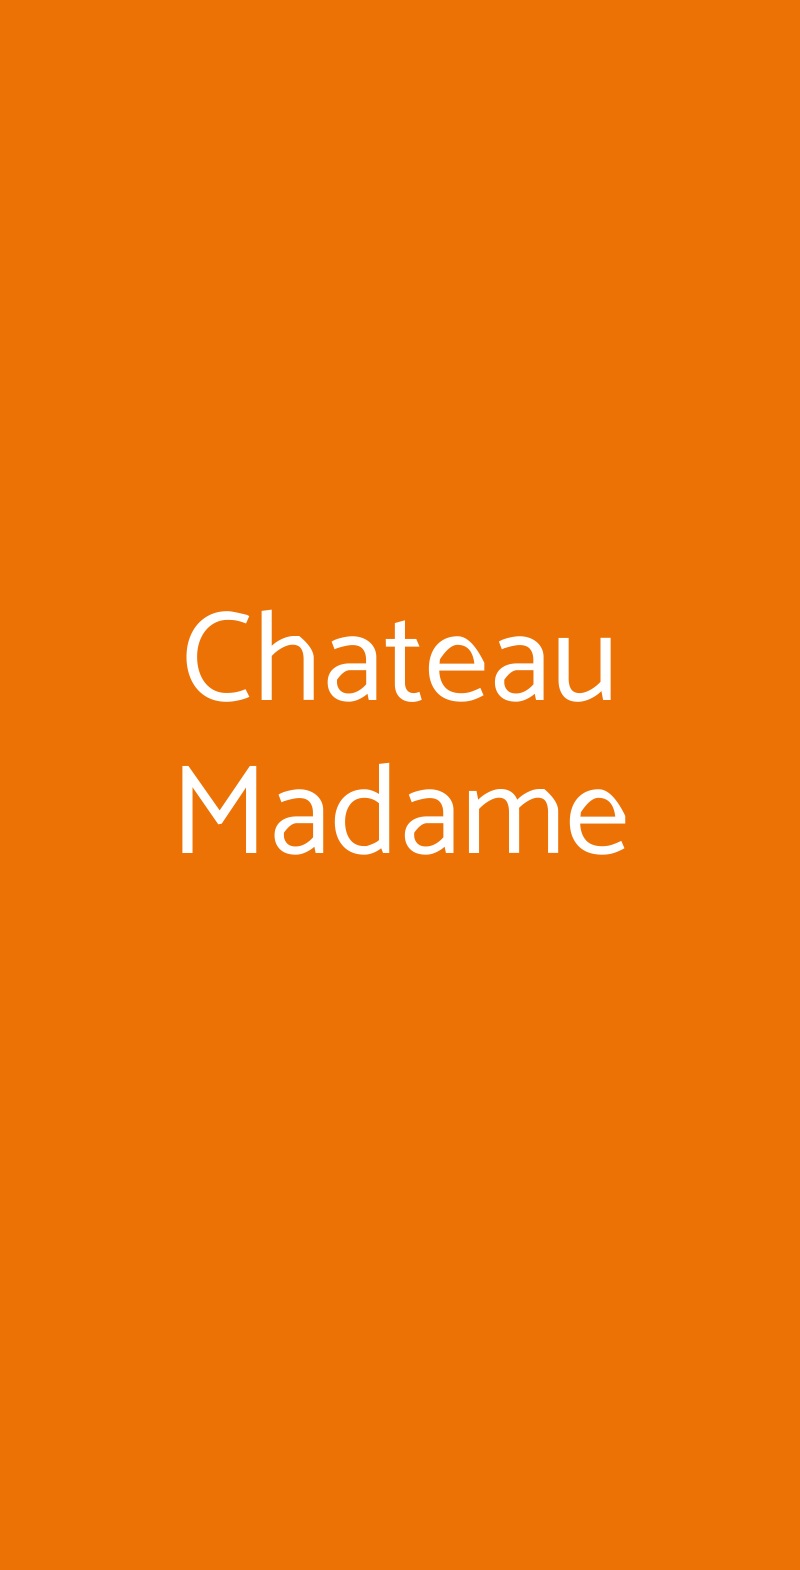 Chateau Madame Castel Madama menù 1 pagina